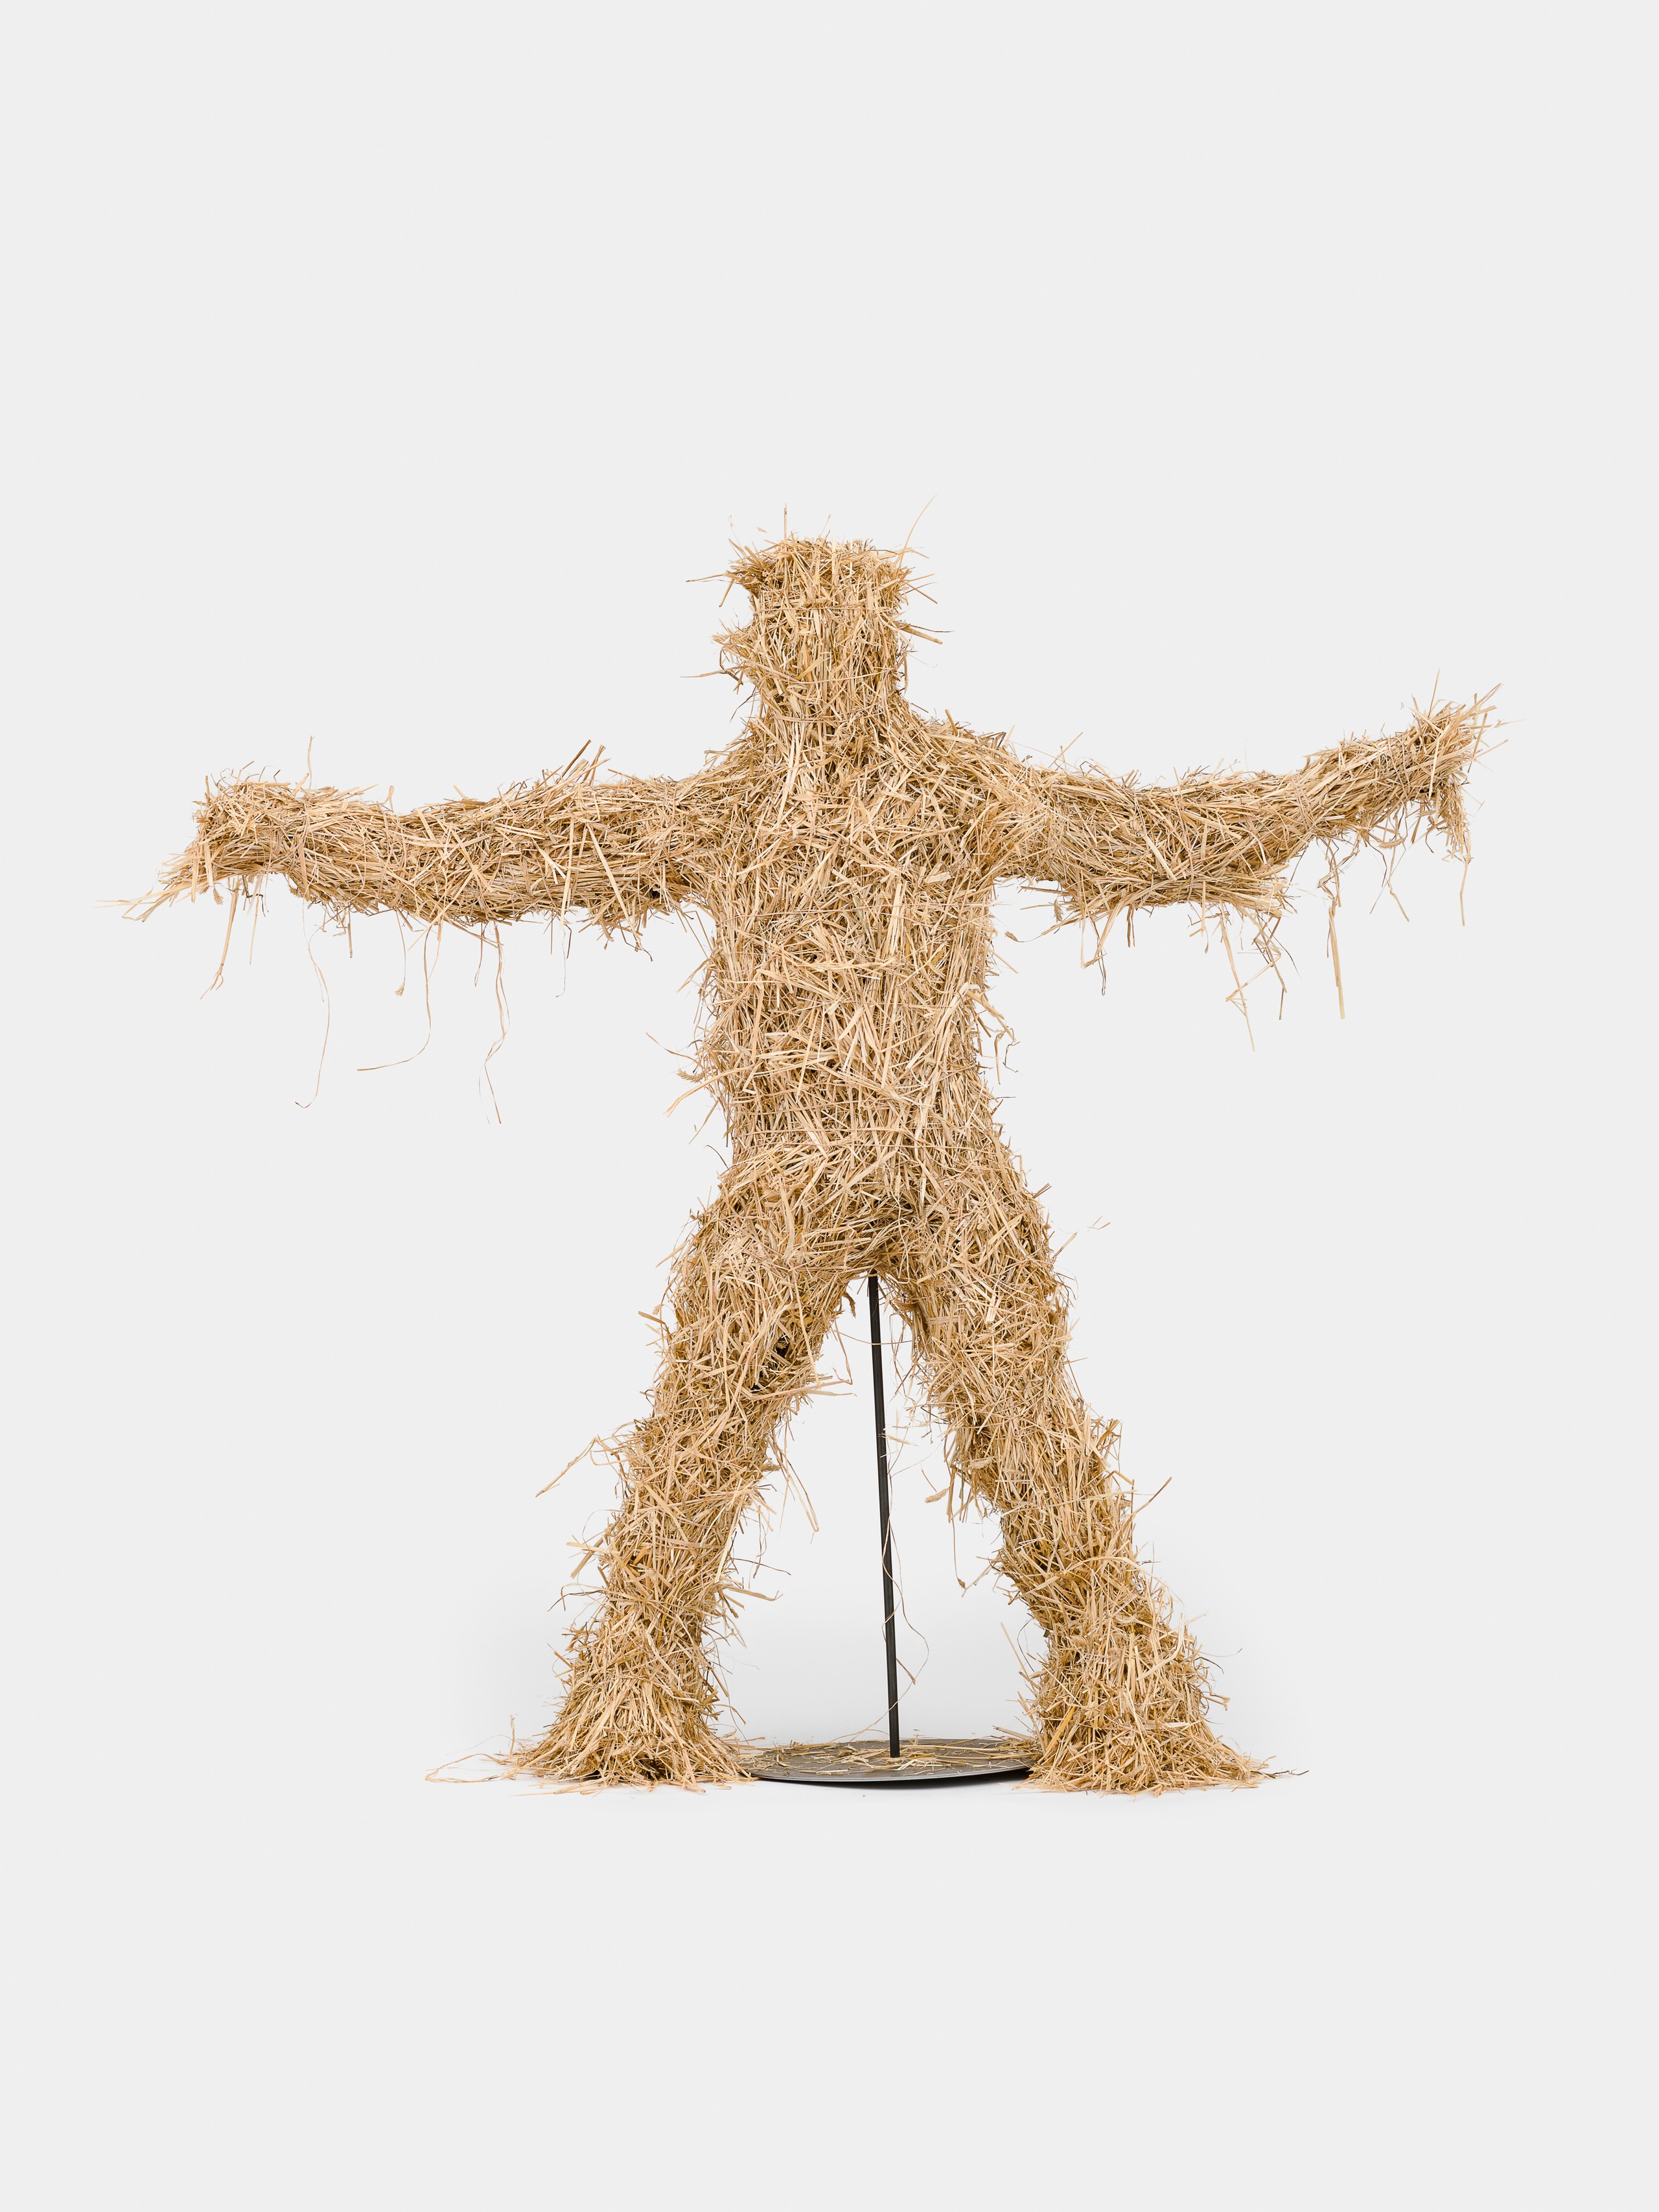 Kaspar Müller, Untitled, 2022, Straw, fiberglass, wood, steel 195 x 210 x 65 cm, 77 x 82 1/2 x 25 1/2 in